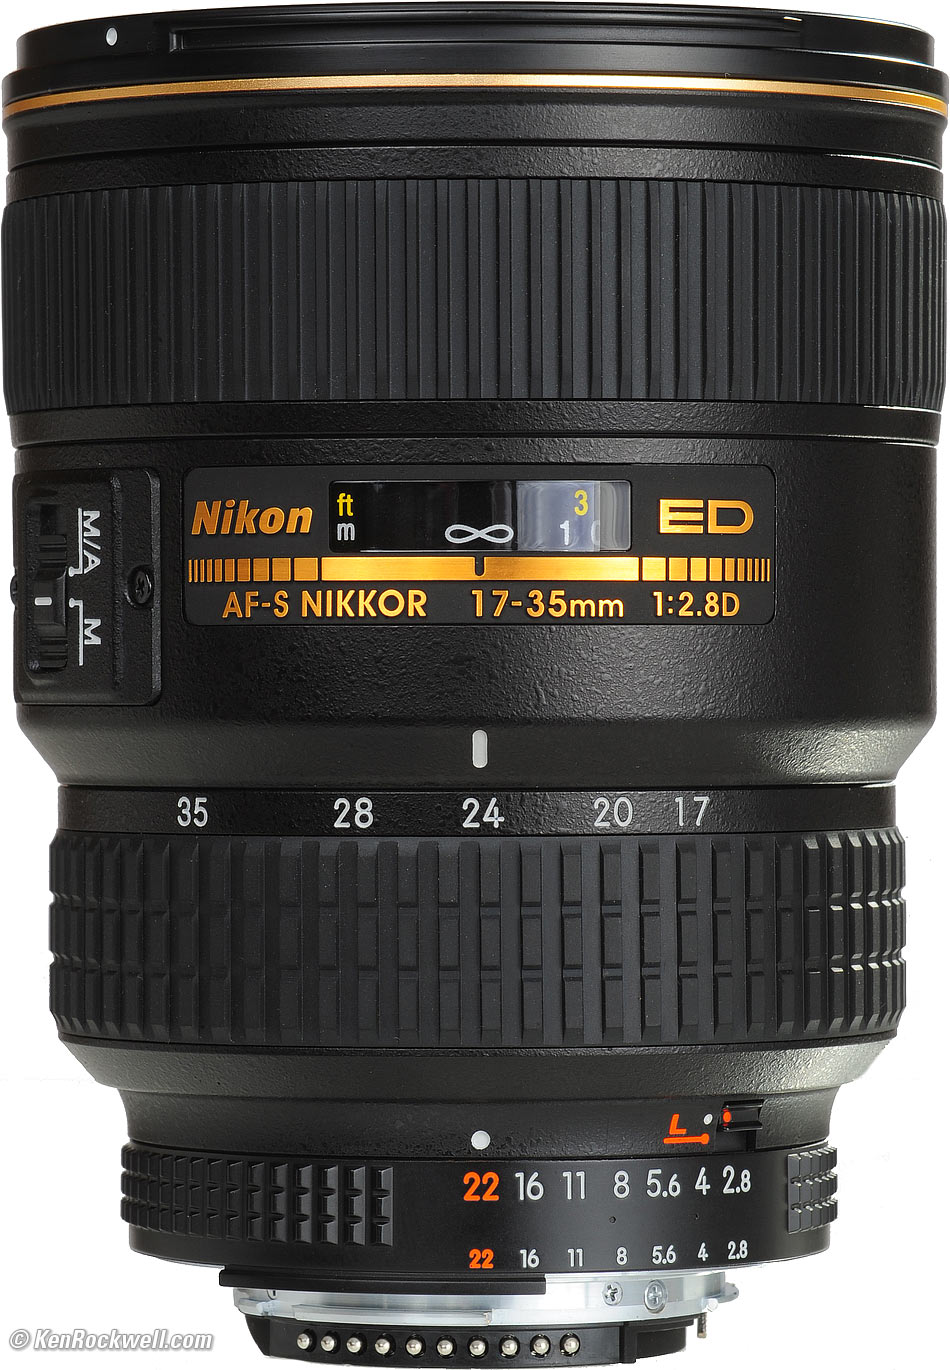 Ultraviolet UV Multi-Coated HD Glass Protection Filter for Nikon AF-S Zoom-NIKKOR 17-35mm f/2.8D IF-ED Lens 